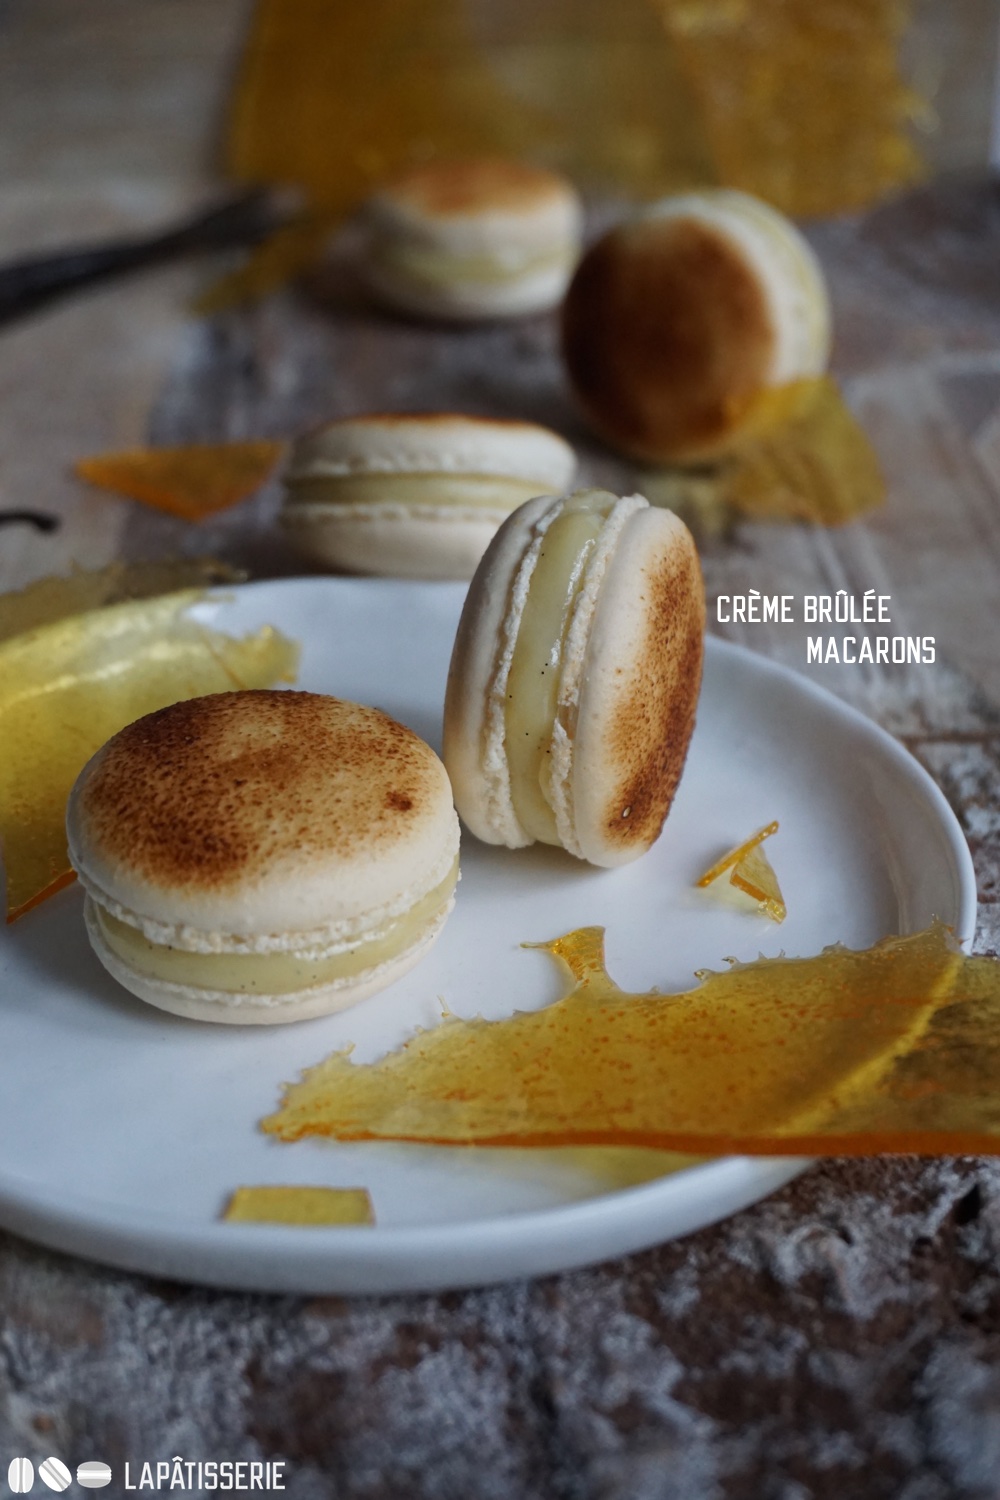 Le Jour du Macaron: Großes Finale mit feinen Crème Brûlée Macarons. Gefüllt mit Vanilleganache und Karamell.